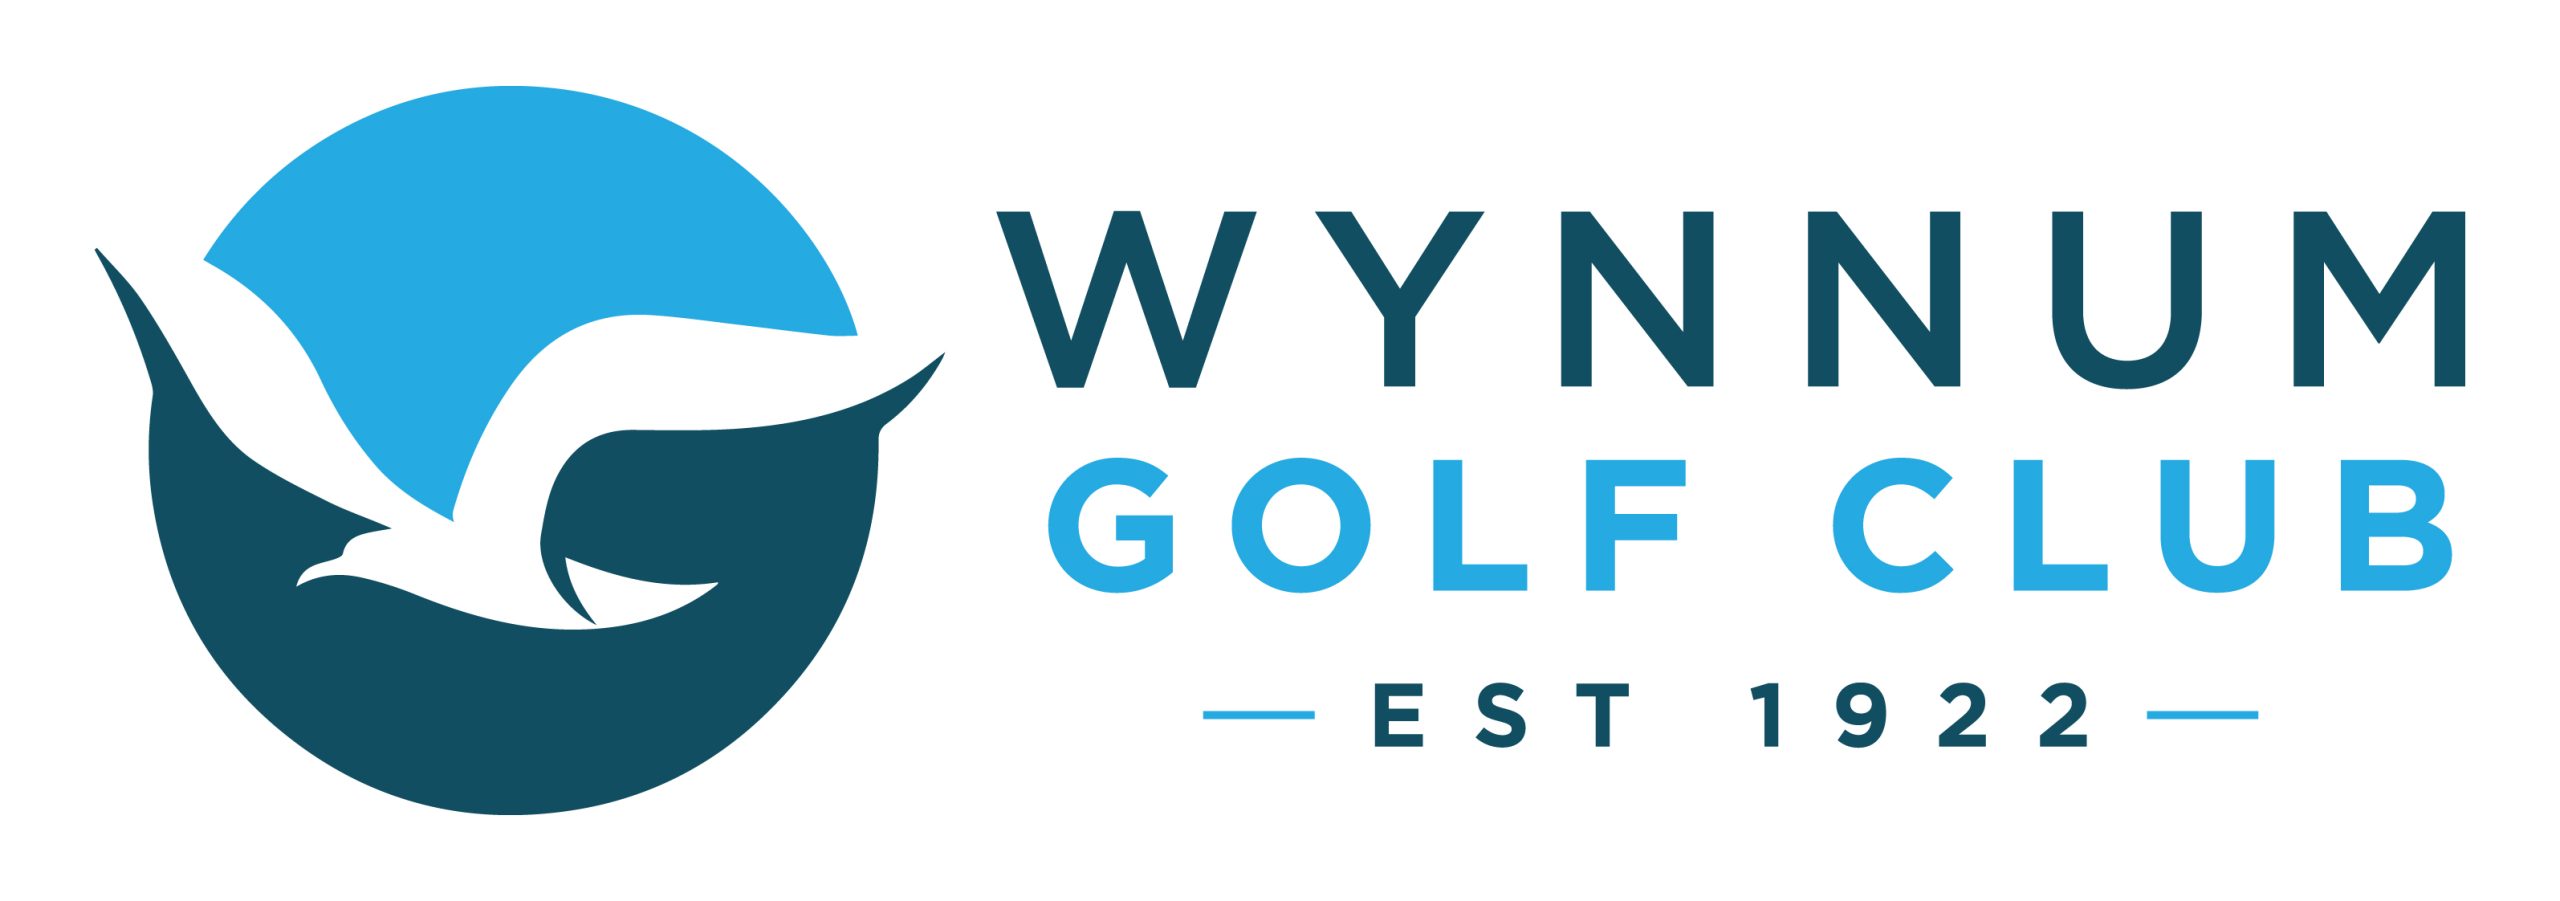 Wynnum Golf Course Logo